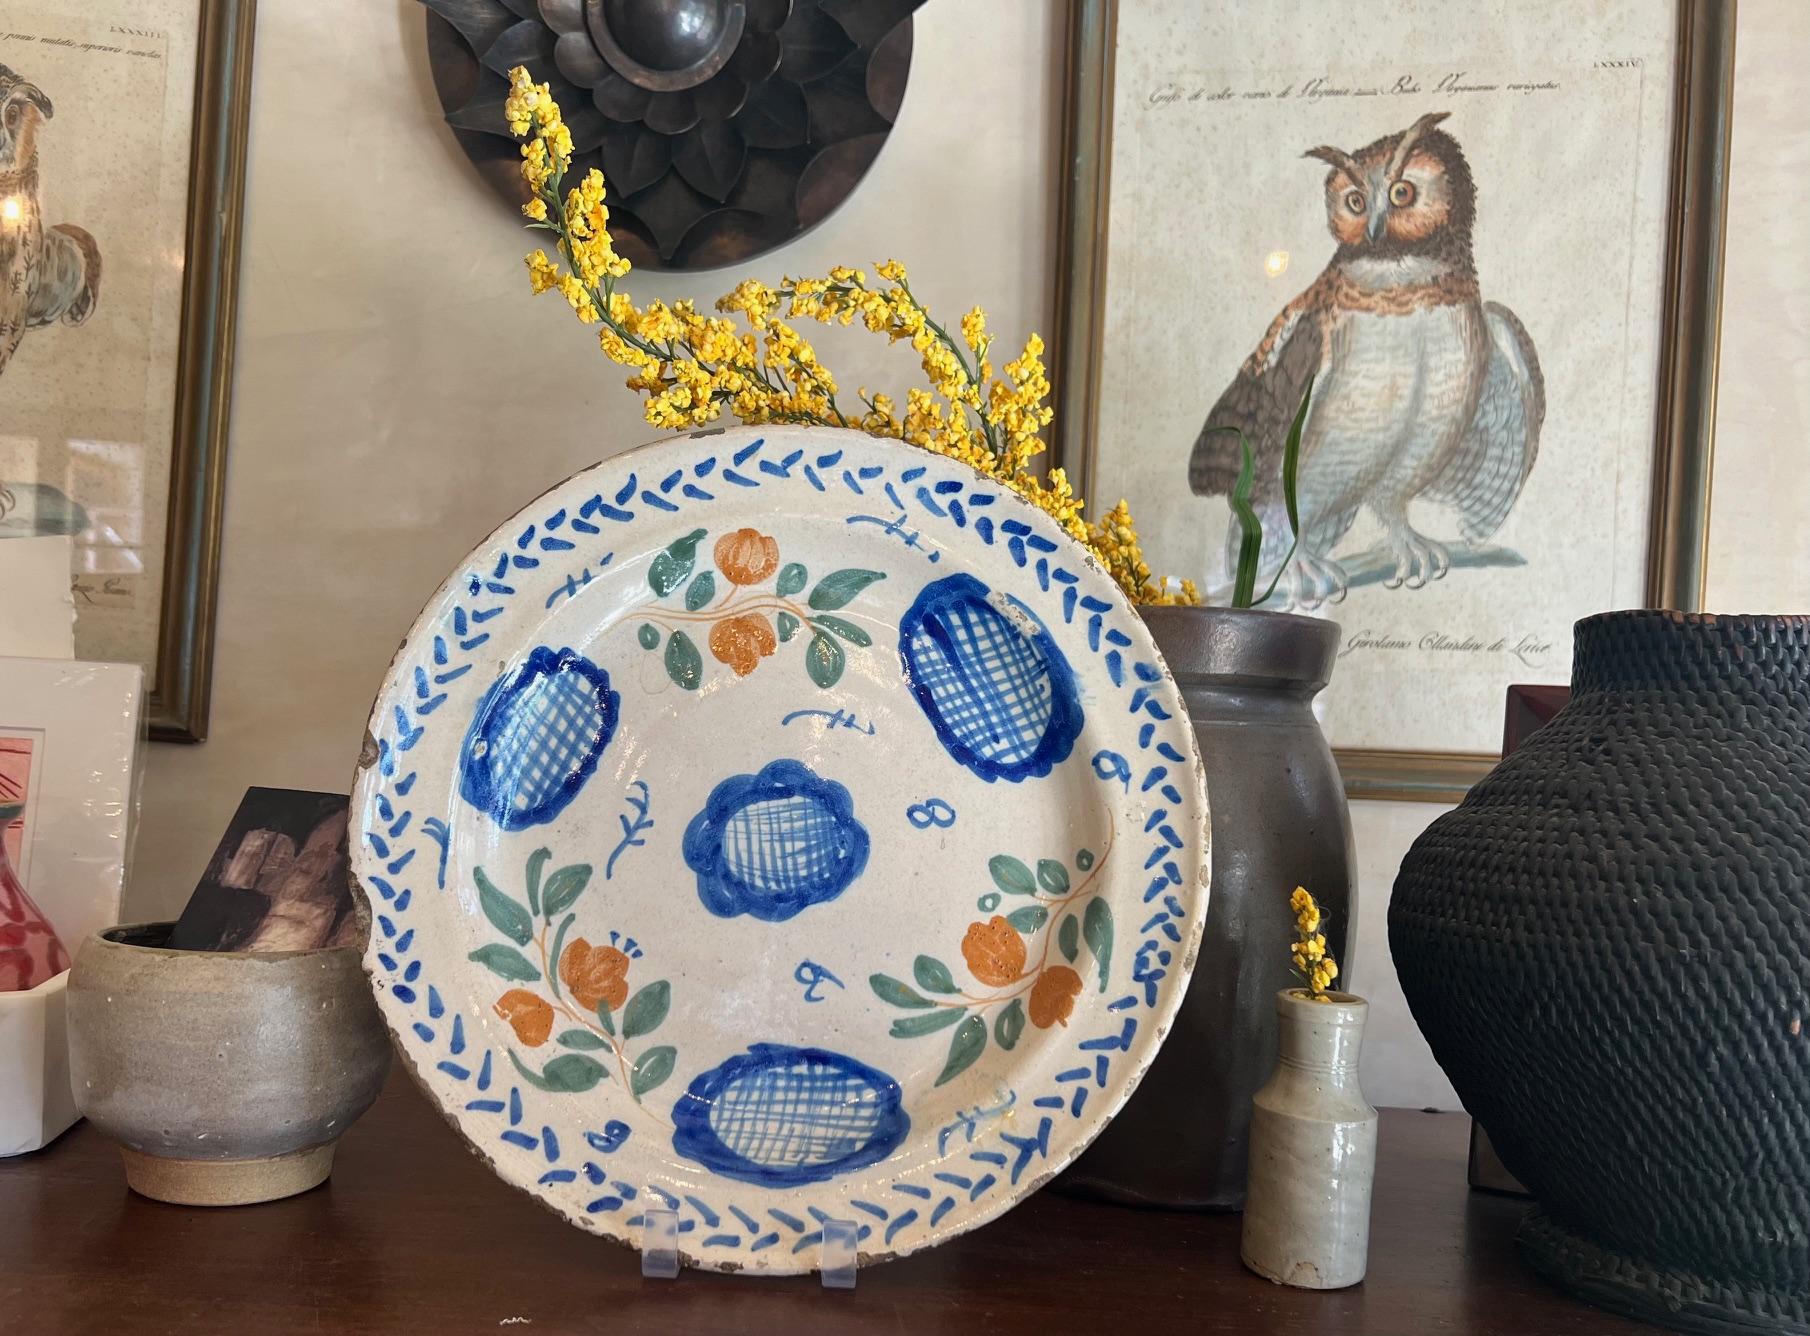 Einfach bemaltes europäisches Ladegerät / Teller / Platte aus dem 18. Jahrhundert, wahrscheinlich spanisch. Der zinnglasierte, handbemalte Teller ist mit blauen und orangefarbenen Blumen verziert, die von grünen Blättern und blauen Akzenten umgeben